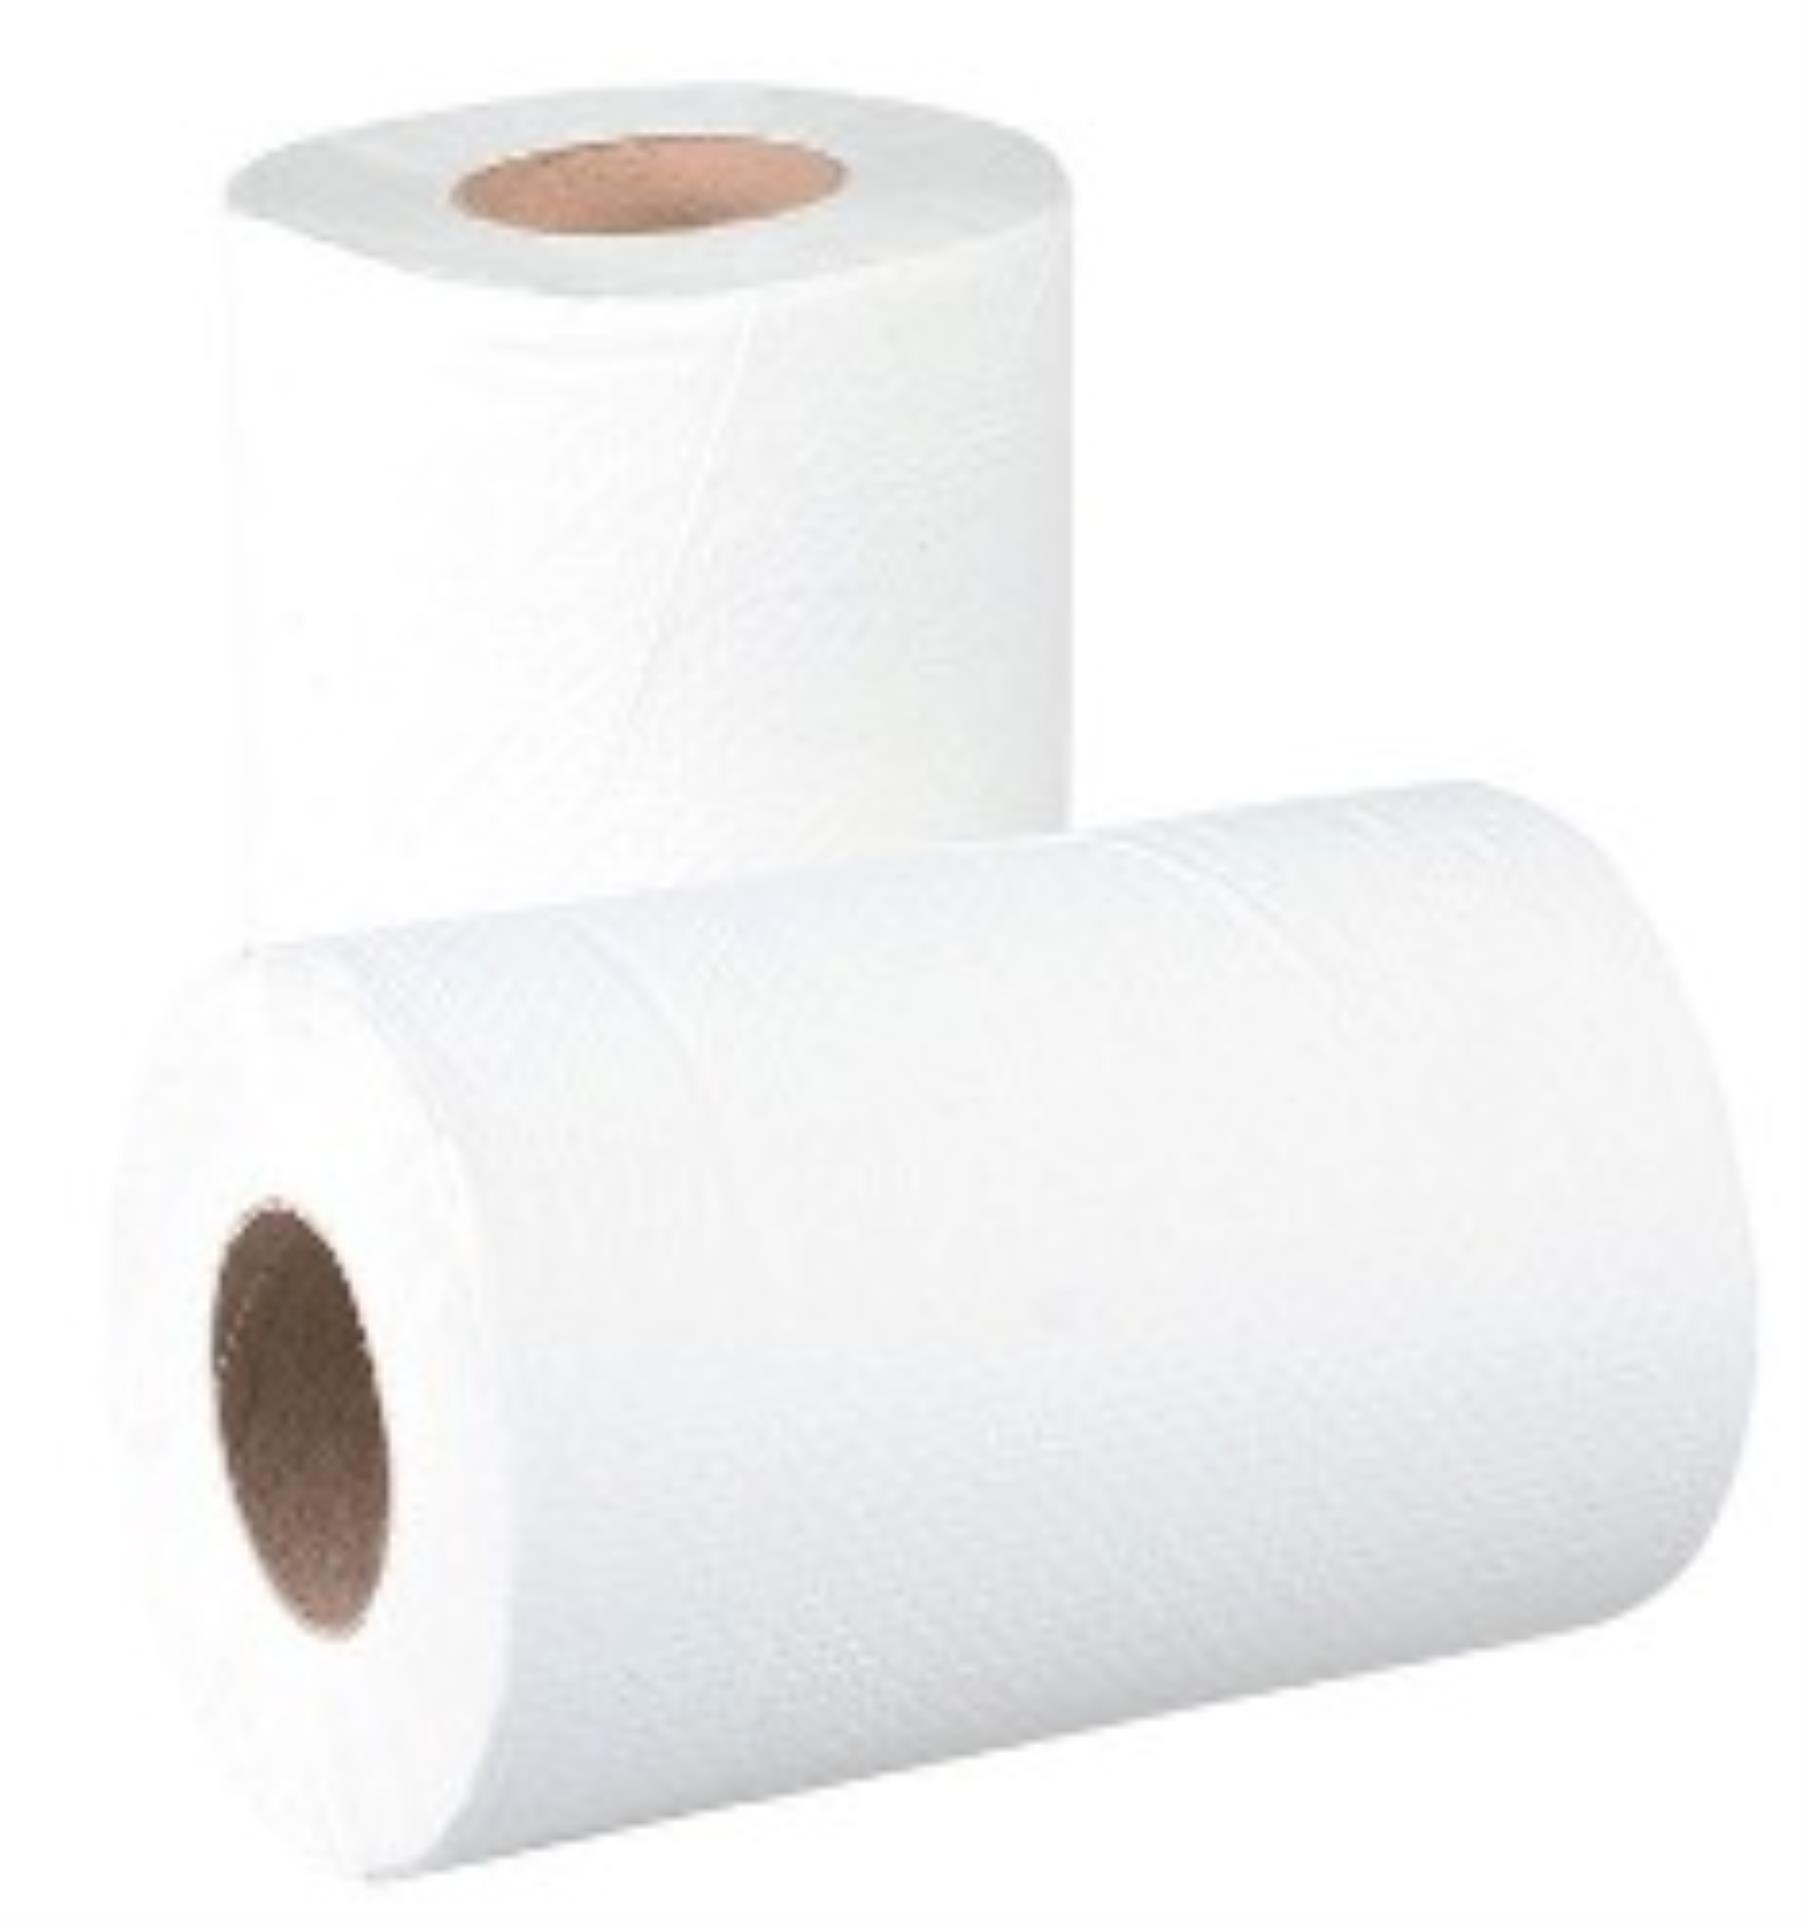 Papírové ručníky v roli Midi - 2 vrstvé, celulóza, 6 rolí